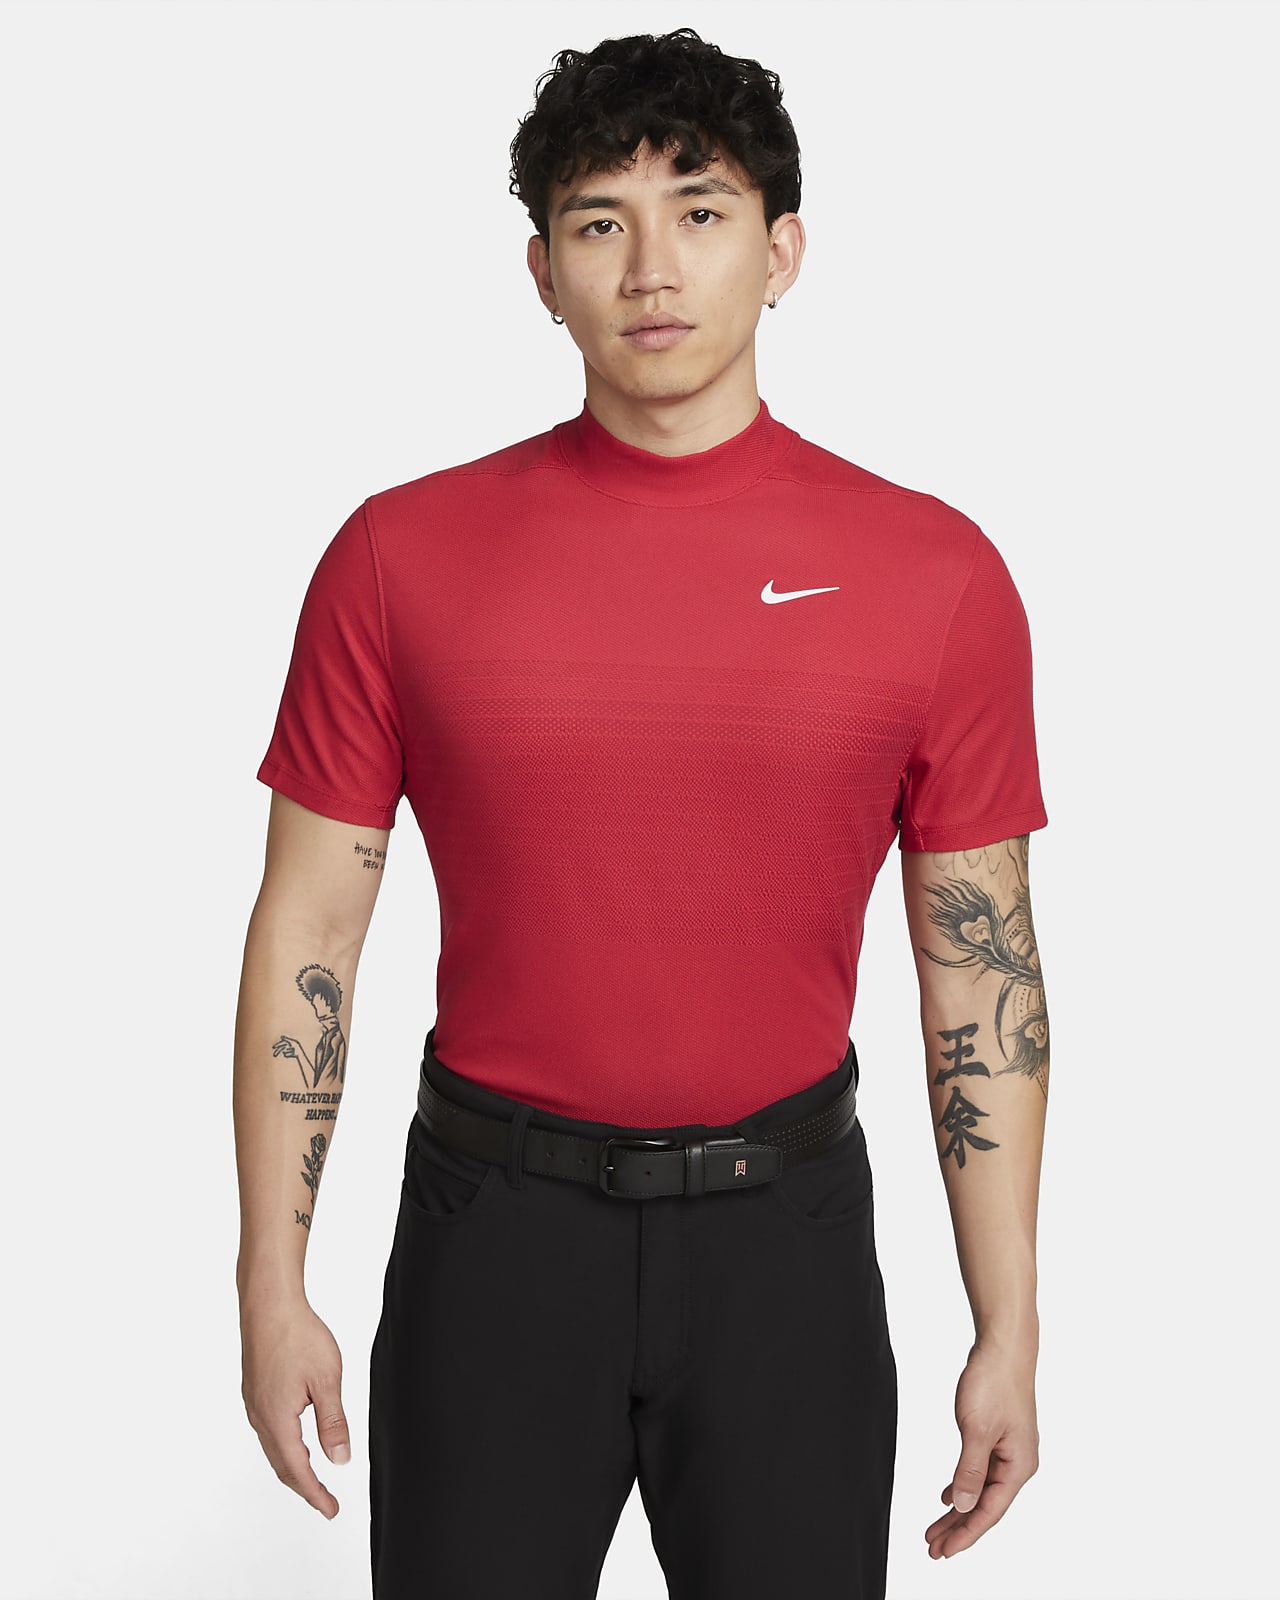 เสื้อโปโลกอล์ฟคอปีนผู้ชาย Nike Dri-FIT ADV Tiger Woods